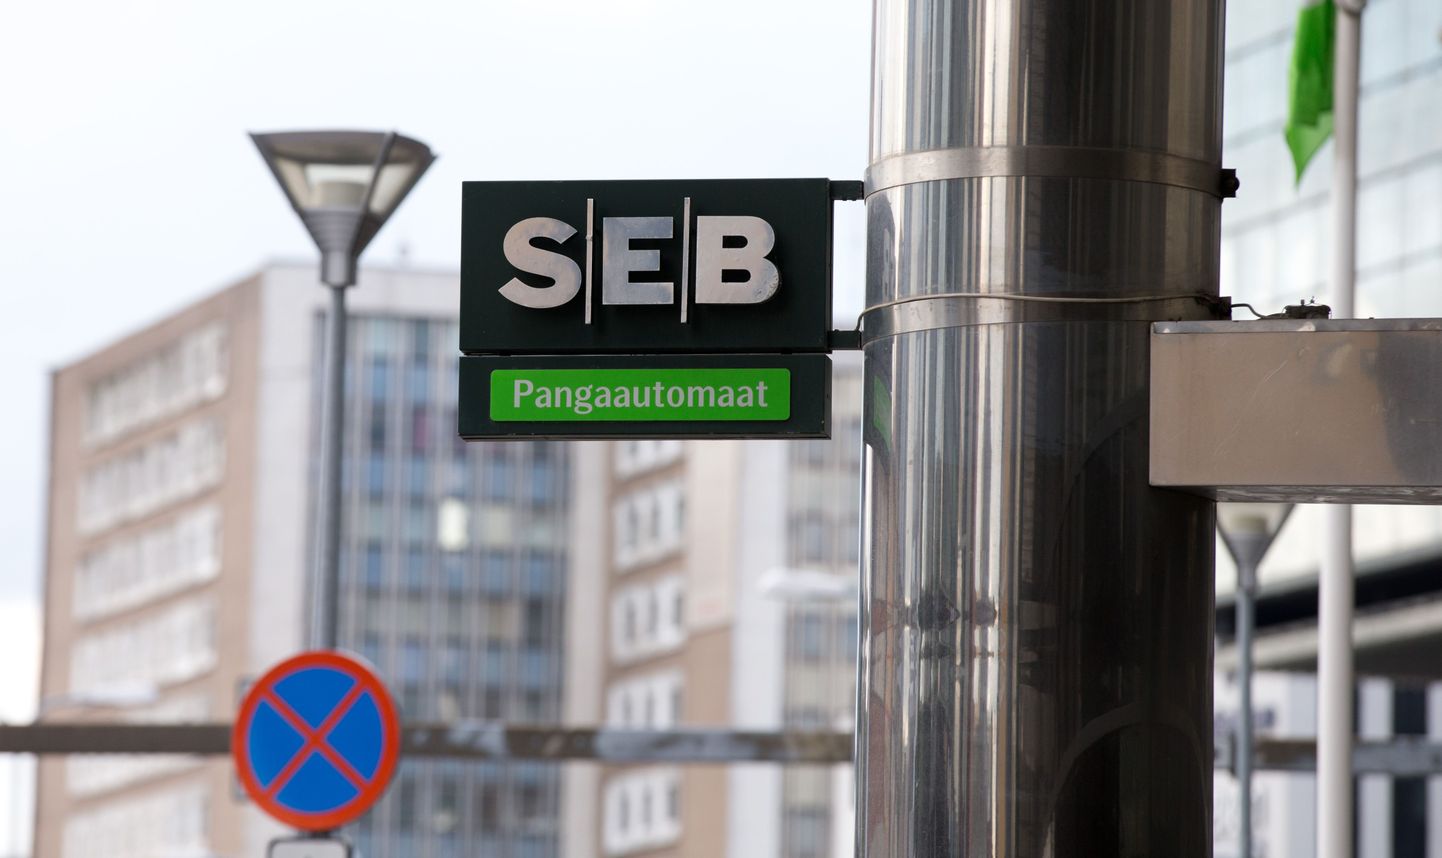 Банк SEB. Иллюстративное фото.